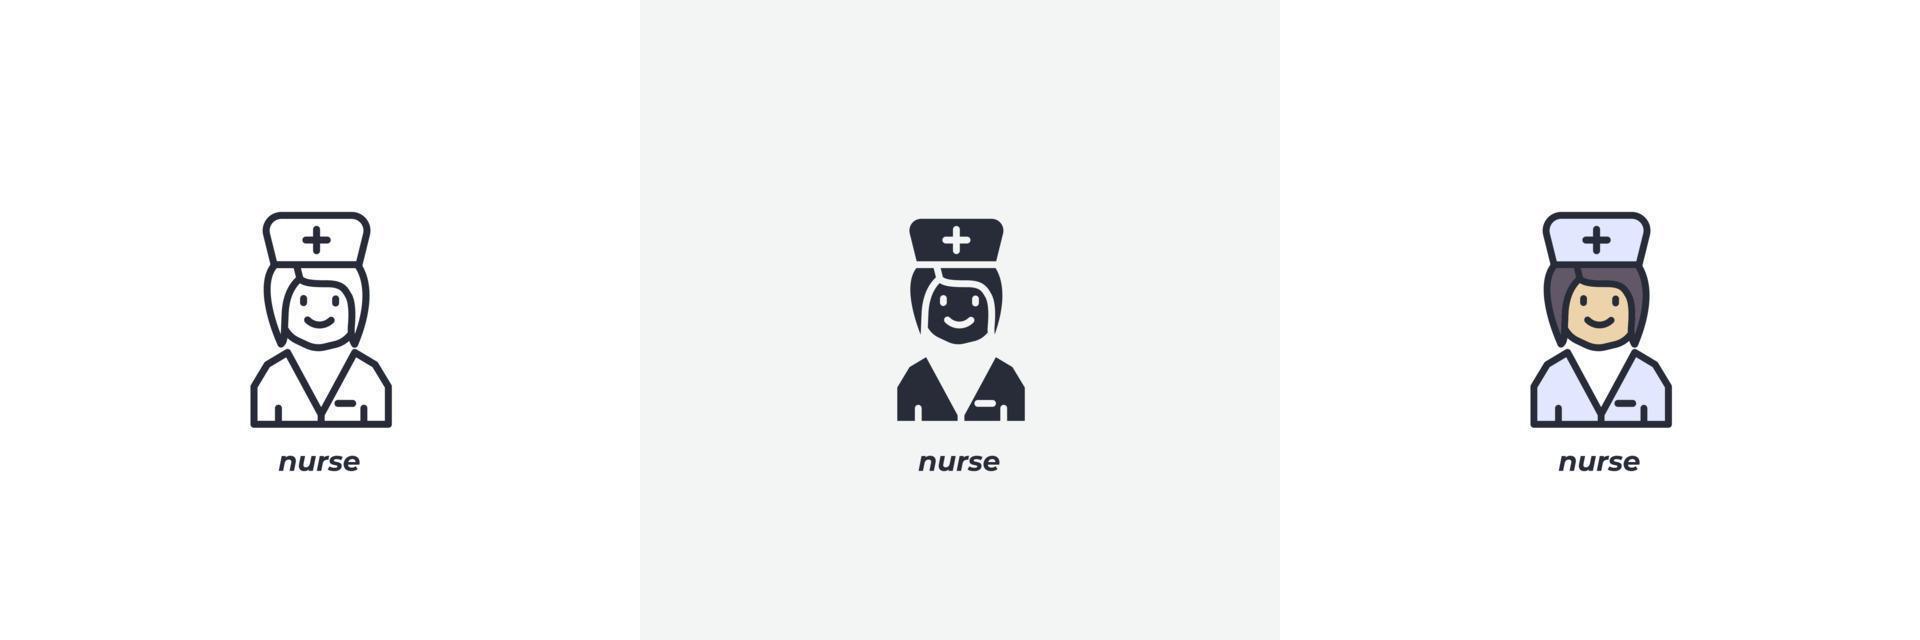 sjuksköterska ikon. linje, fast och fylld översikt färgrik version, översikt och fylld vektor tecken. aning symbol, logotyp illustration. vektor grafik